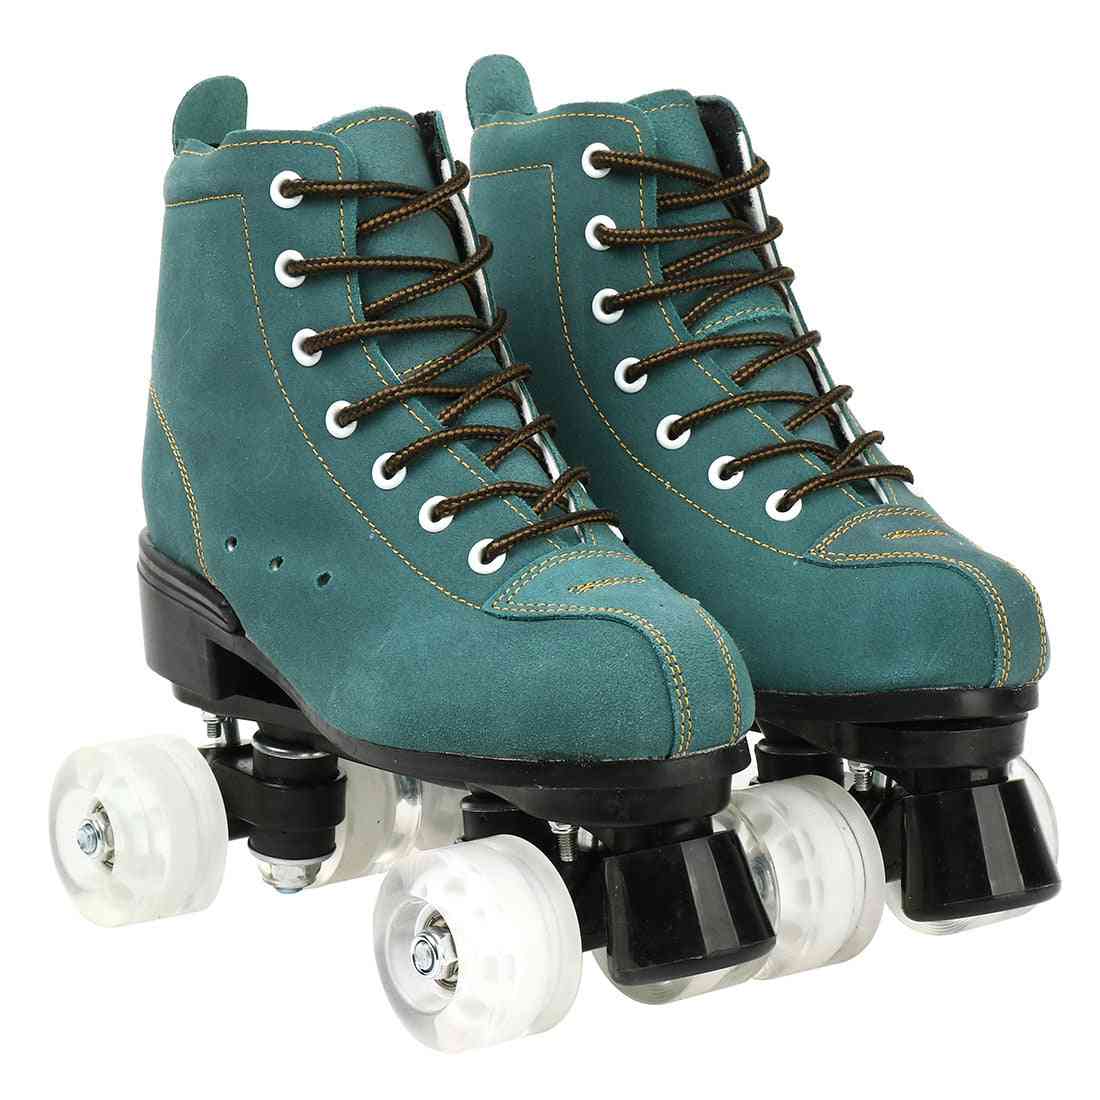 Cowhide Flash Wheels Shoes, Double Line Skates